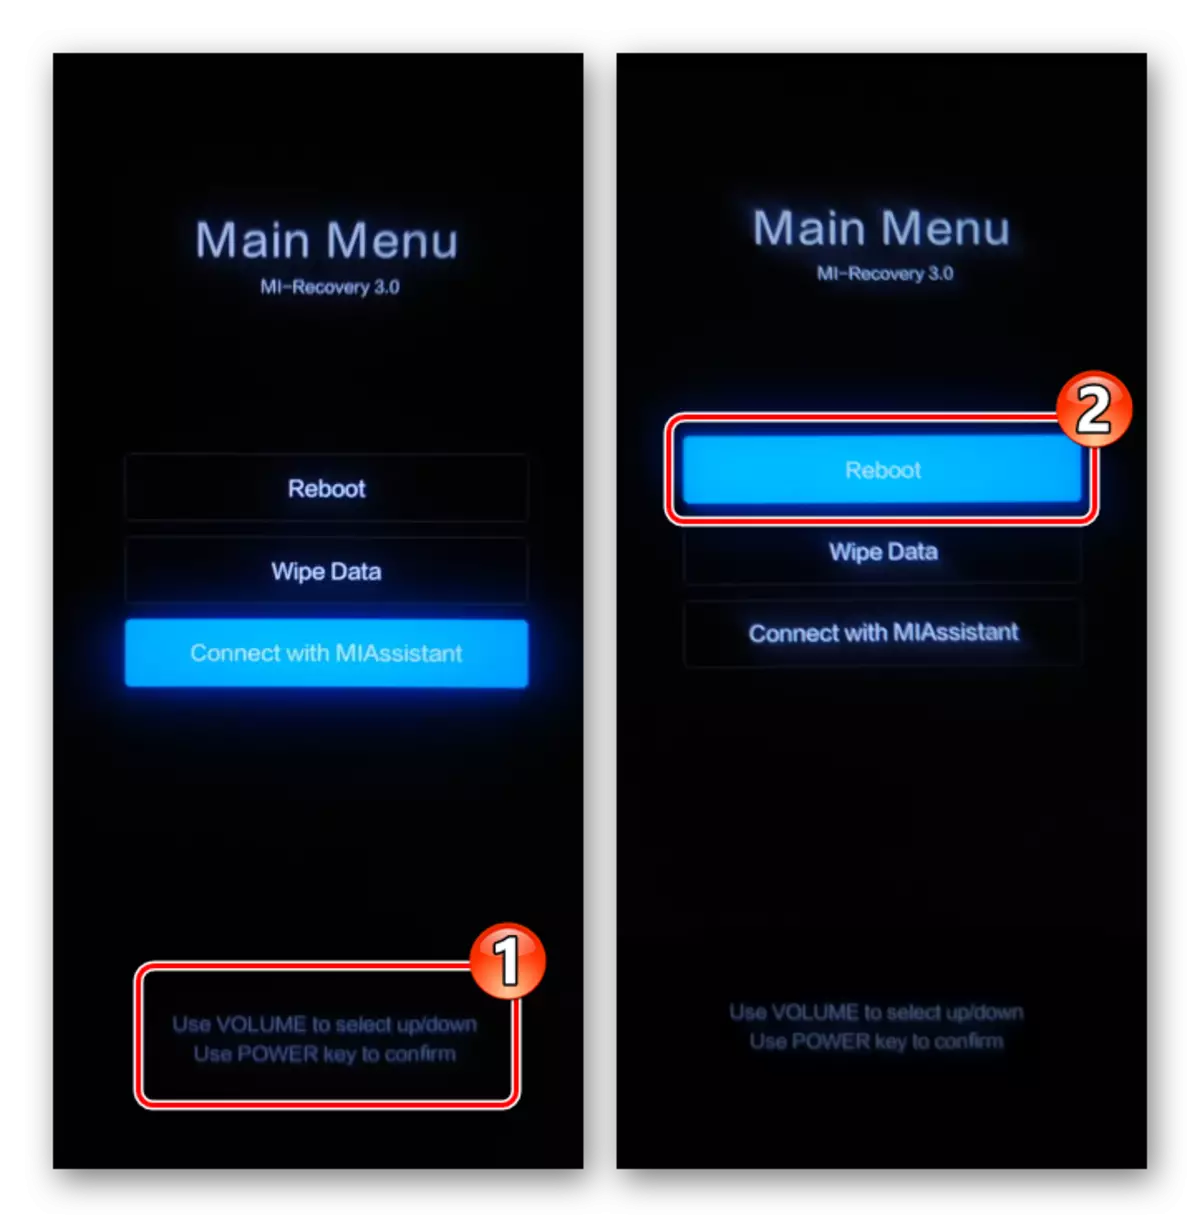 Xiaomi MIUI Main Menu (fabriek rekaveri) - beheer via hardeware knoppies - Kies Reboot funksie